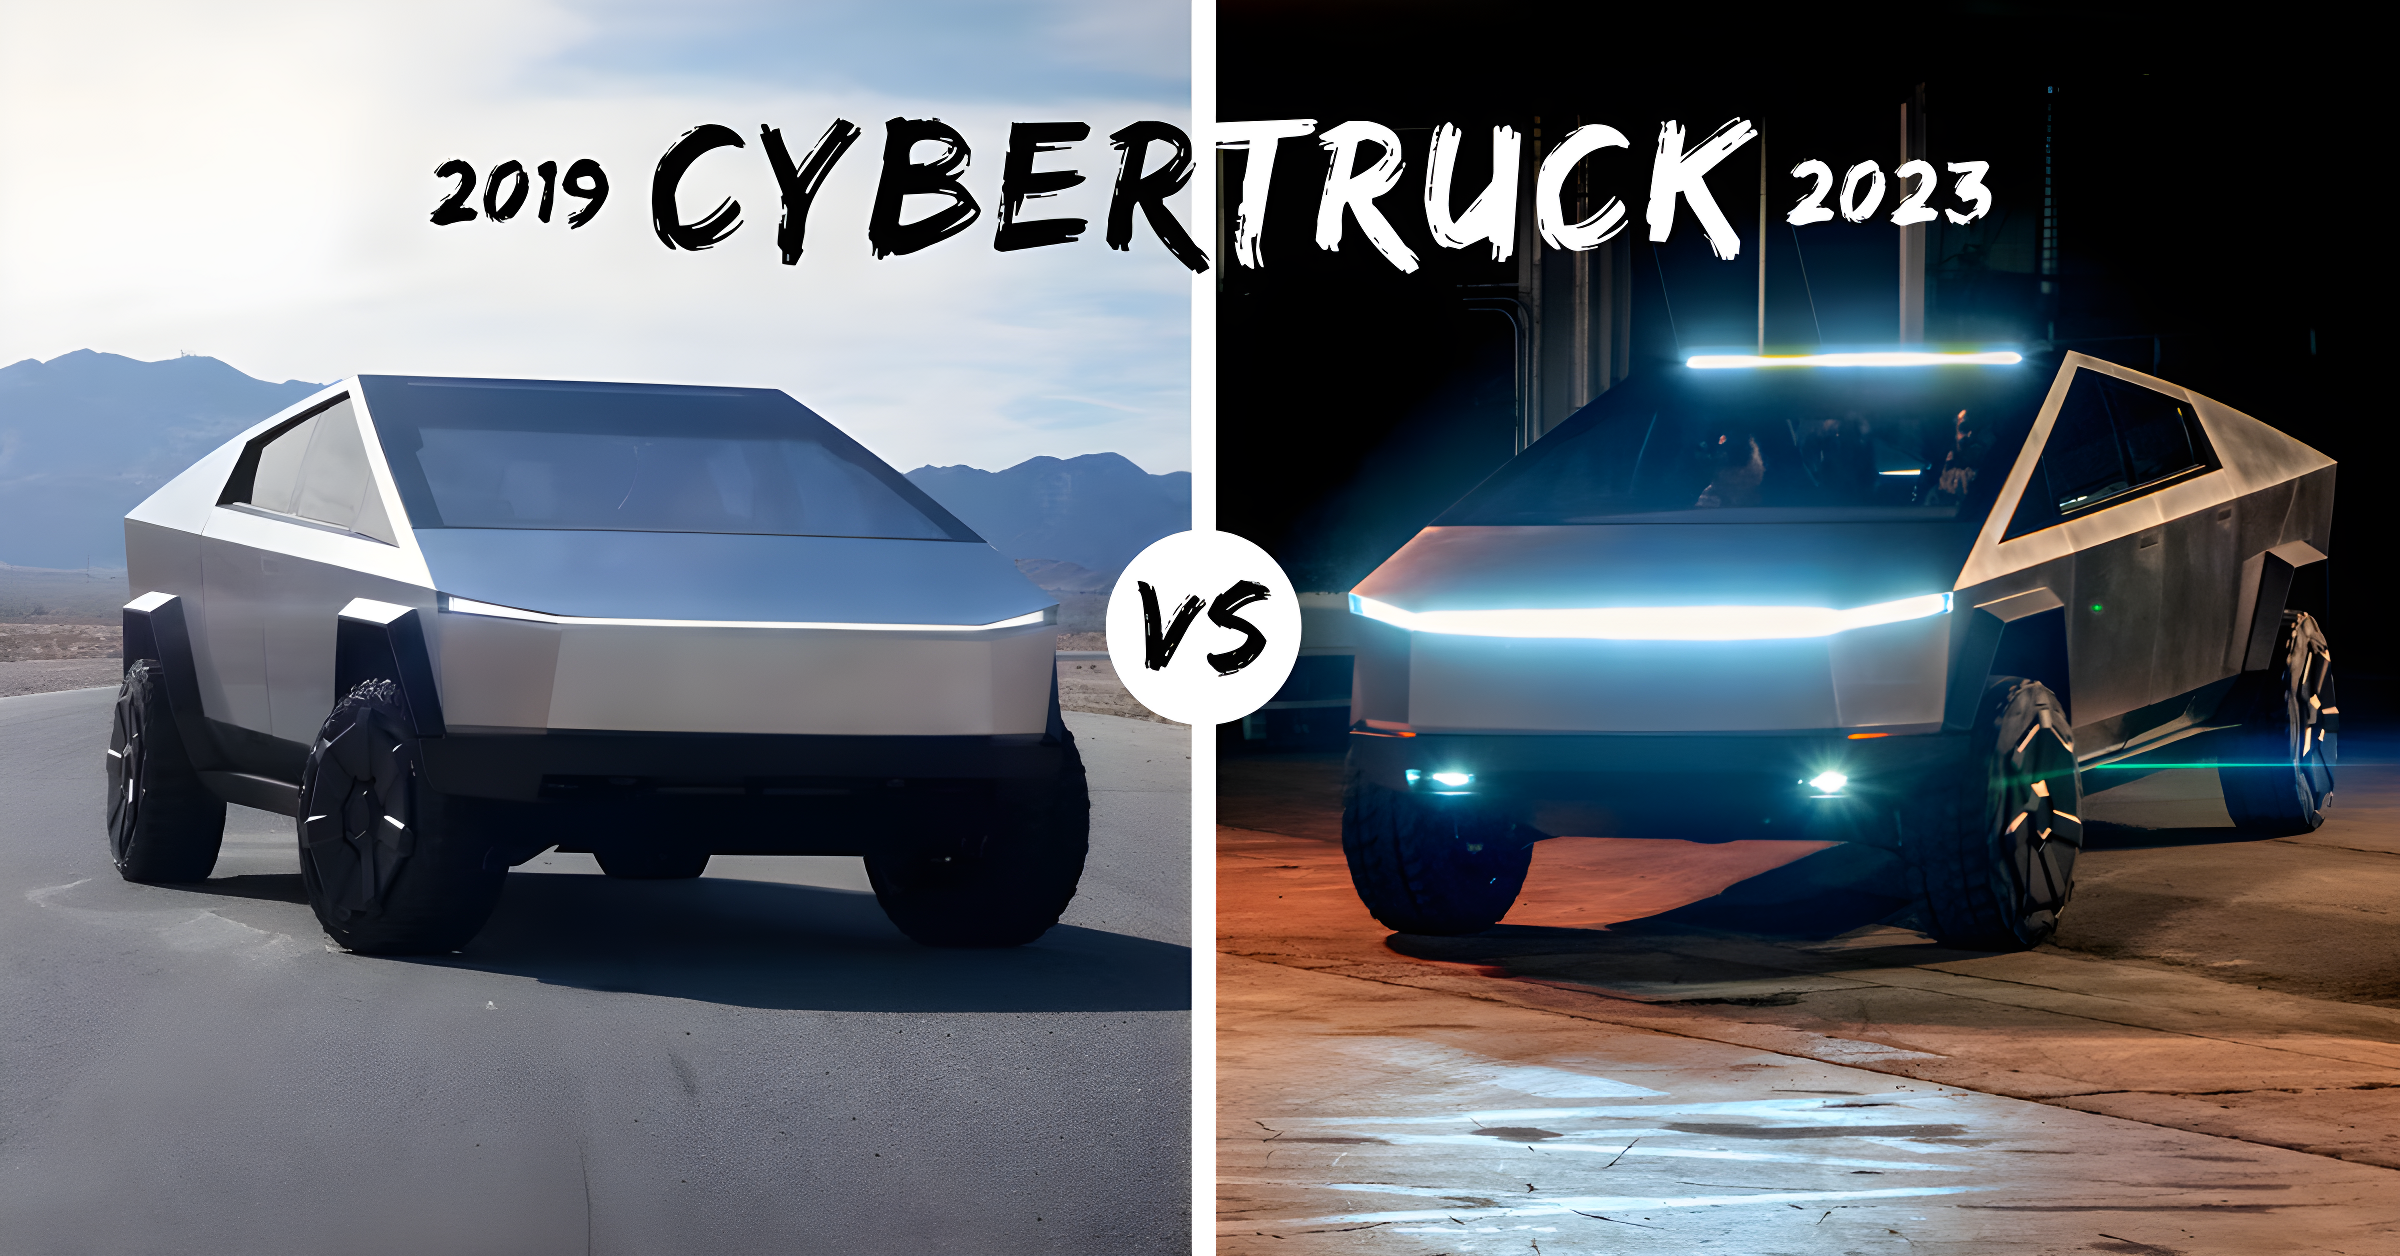 https://e-vehicleinfo.com/global/cybertruck-2019-vs-cybertruck-2023/